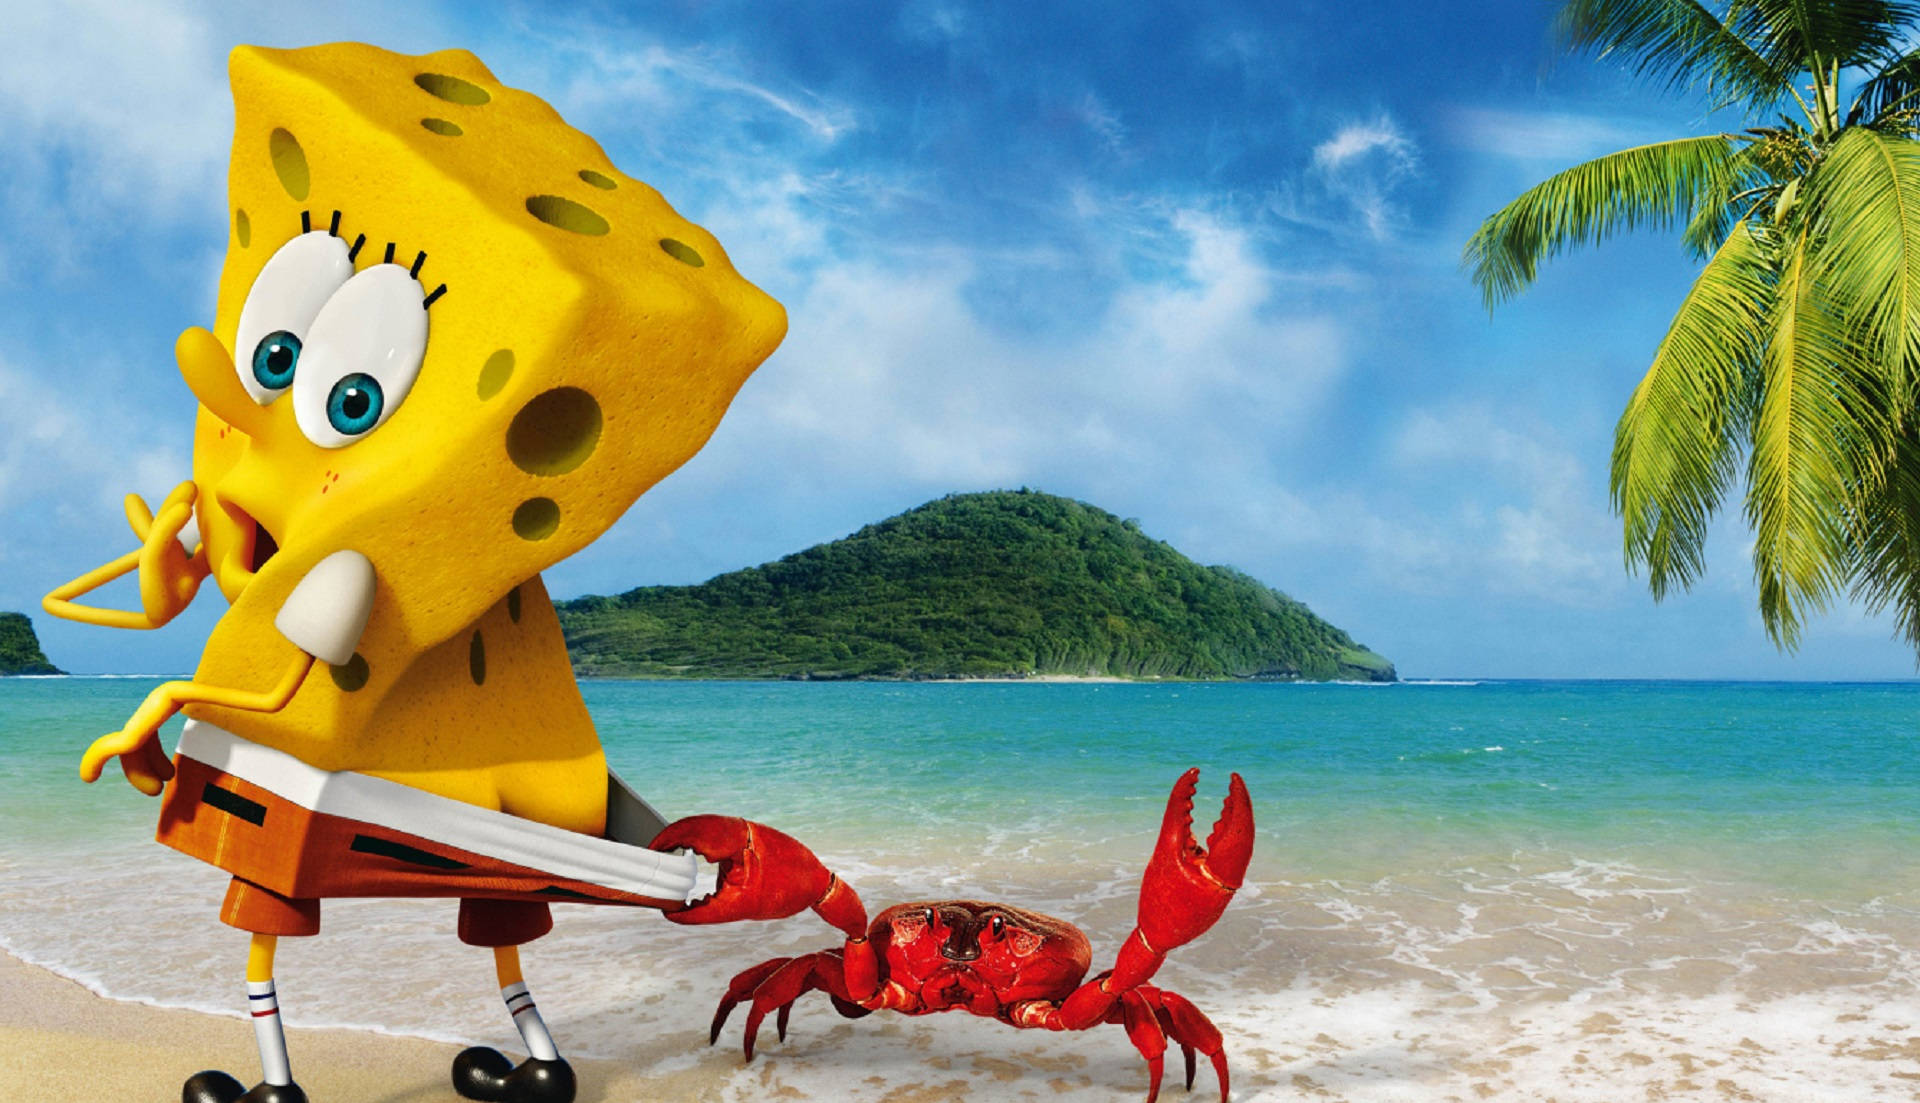 Spongebob And A Crab